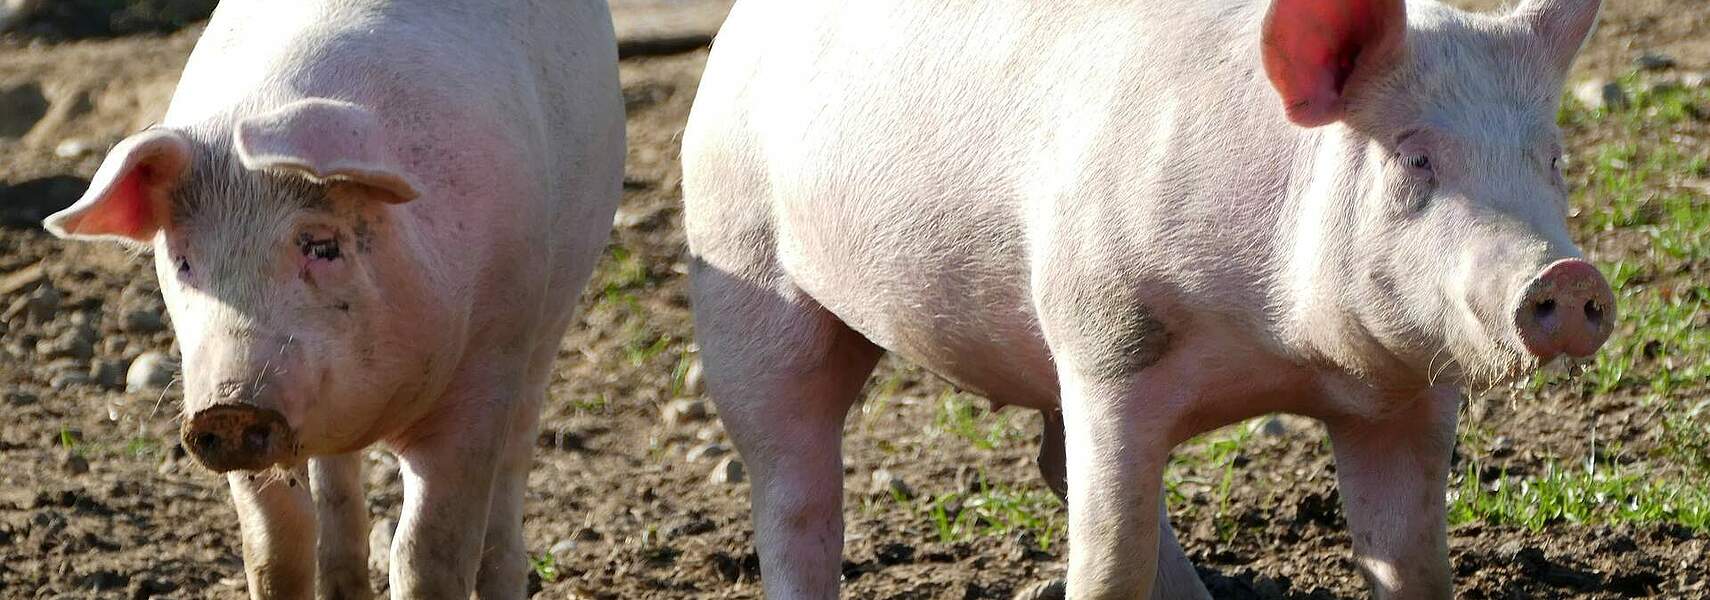 DBV fordert konsequentere Bekämpfung der Afrikanischen Schweinepest